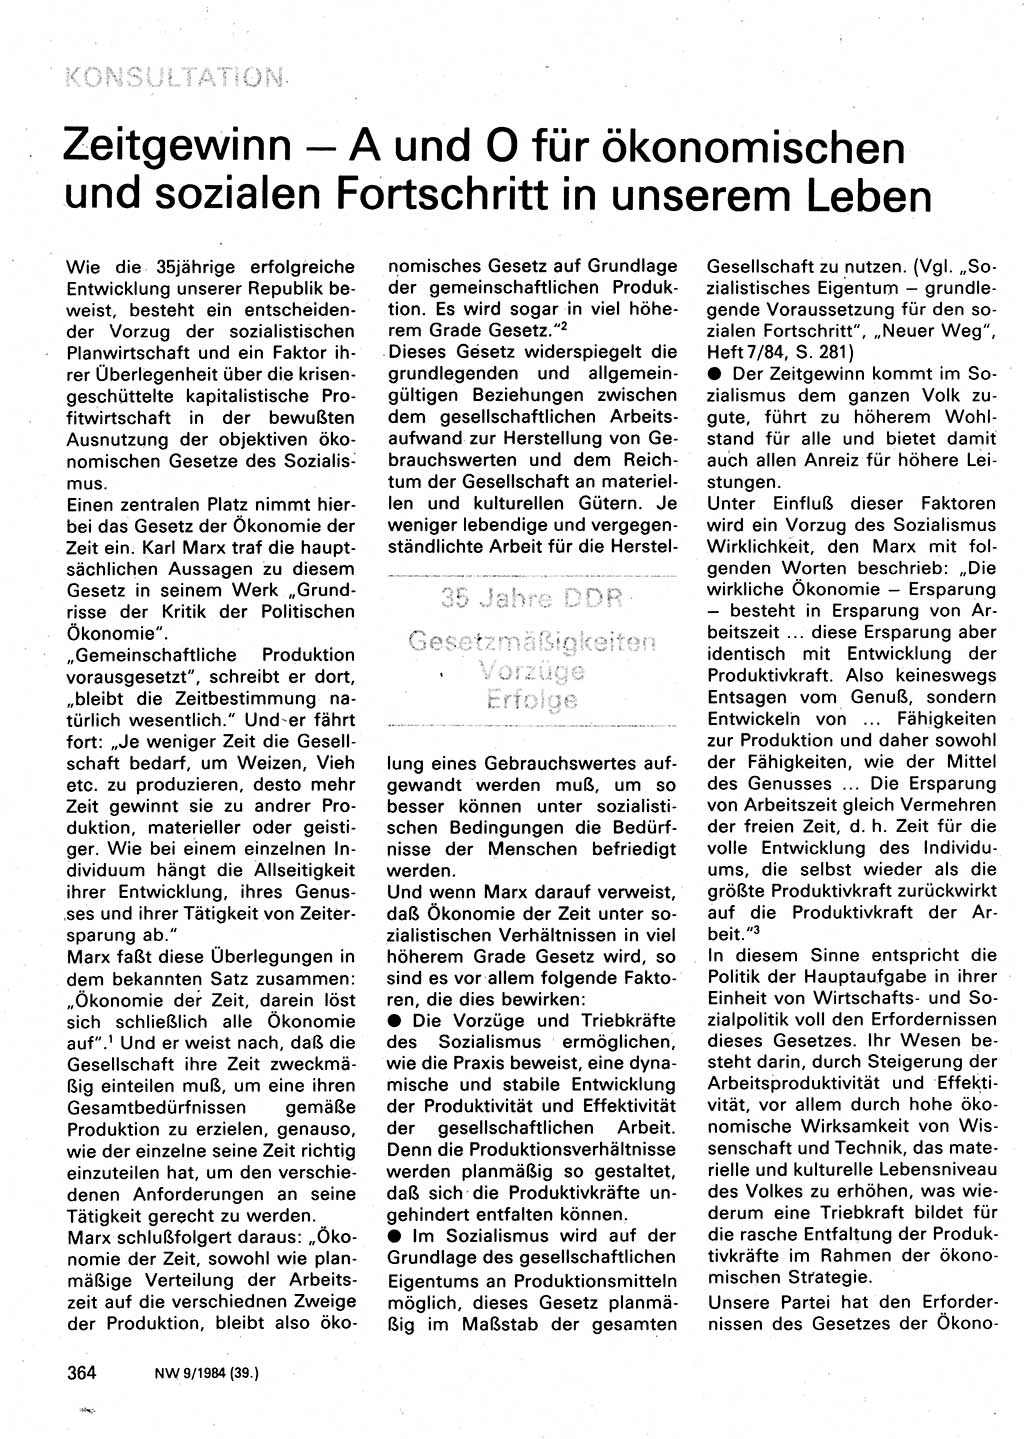 Neuer Weg (NW), Organ des Zentralkomitees (ZK) der SED (Sozialistische Einheitspartei Deutschlands) für Fragen des Parteilebens, 39. Jahrgang [Deutsche Demokratische Republik (DDR)] 1984, Seite 364 (NW ZK SED DDR 1984, S. 364)